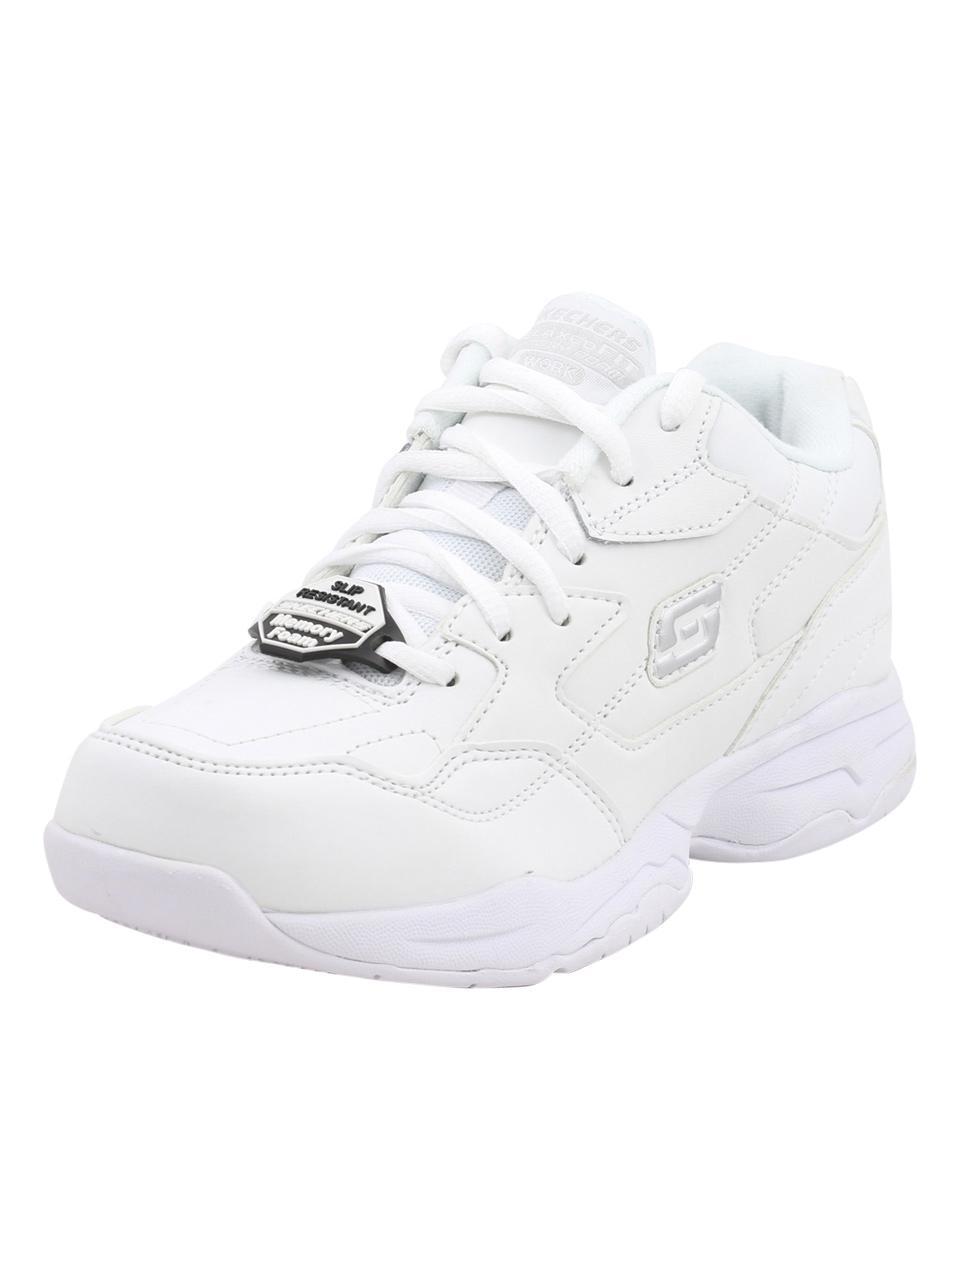 Skechers Work Women's Felton Albie Memory Foam Slip Resistant Sneakers Shoes - White - 6 B(M) US